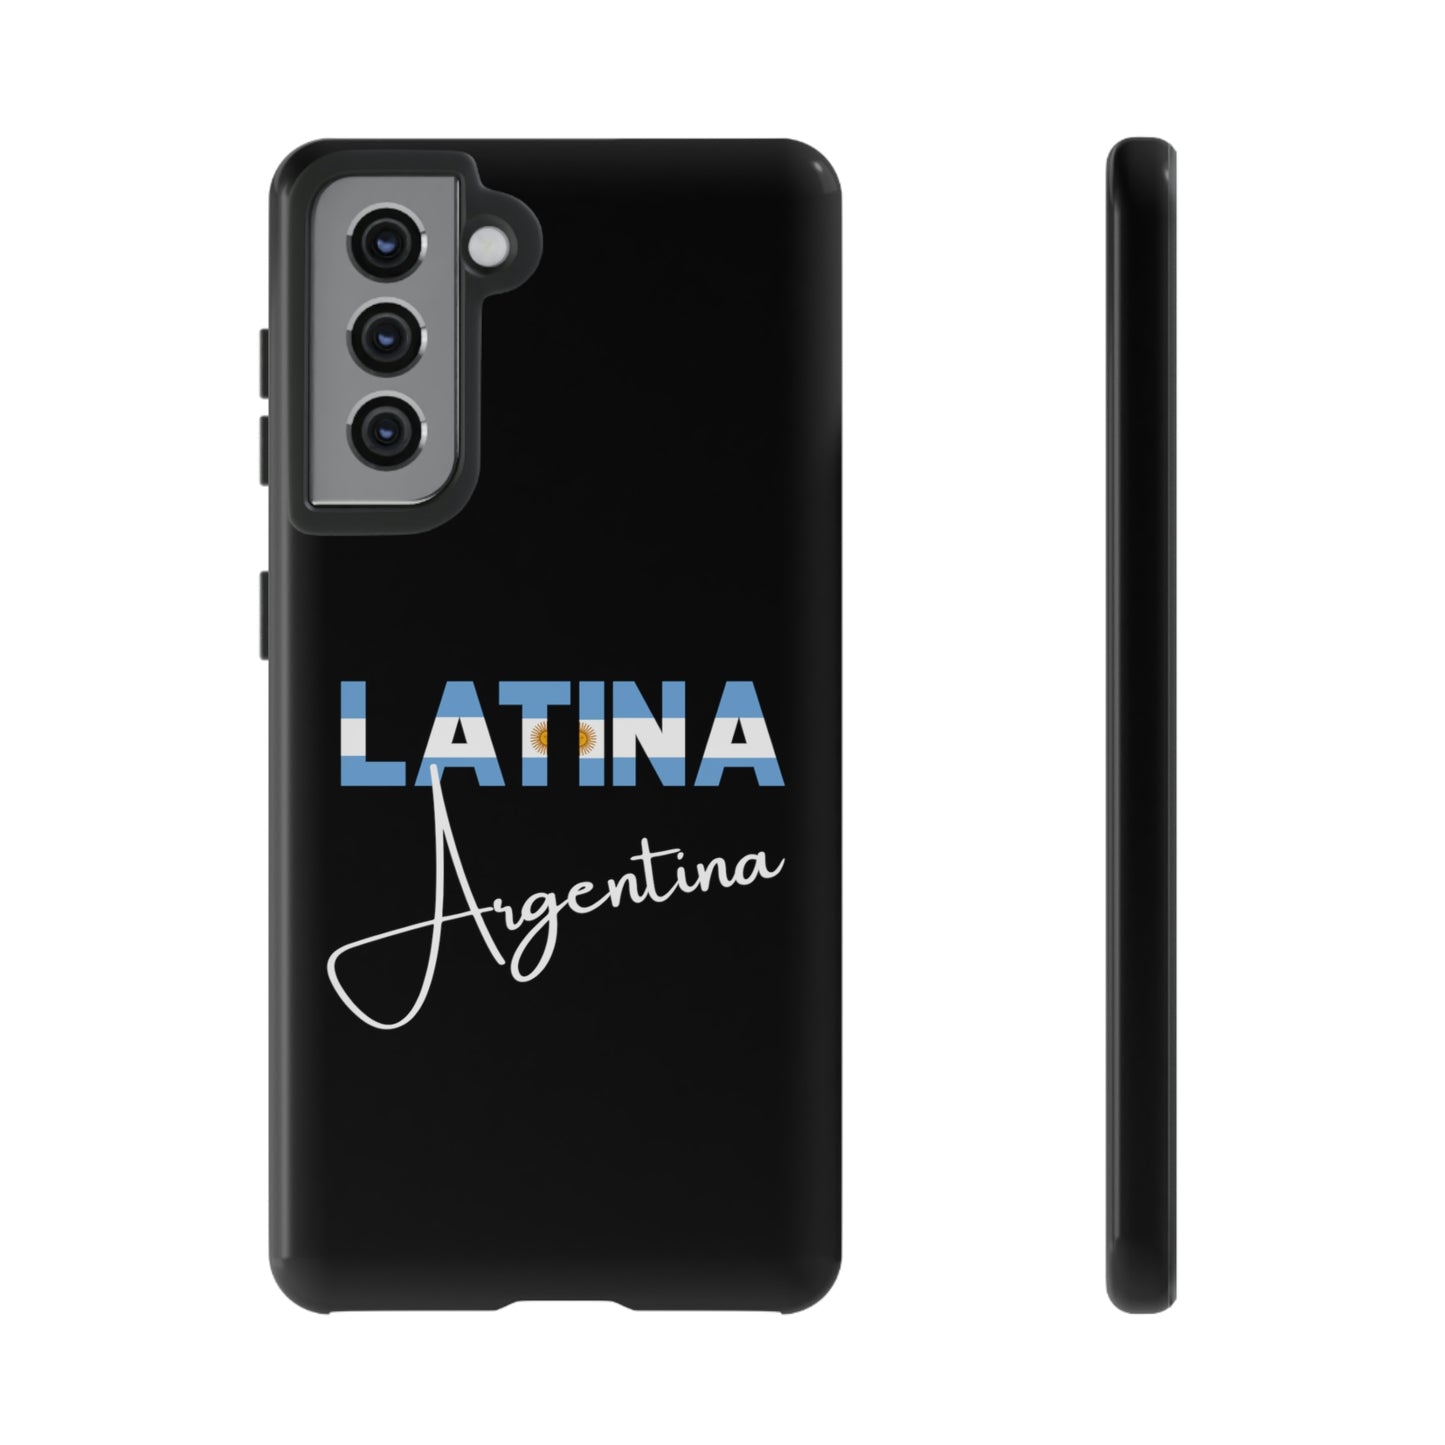 Latina Argentina, Tough Phone Case